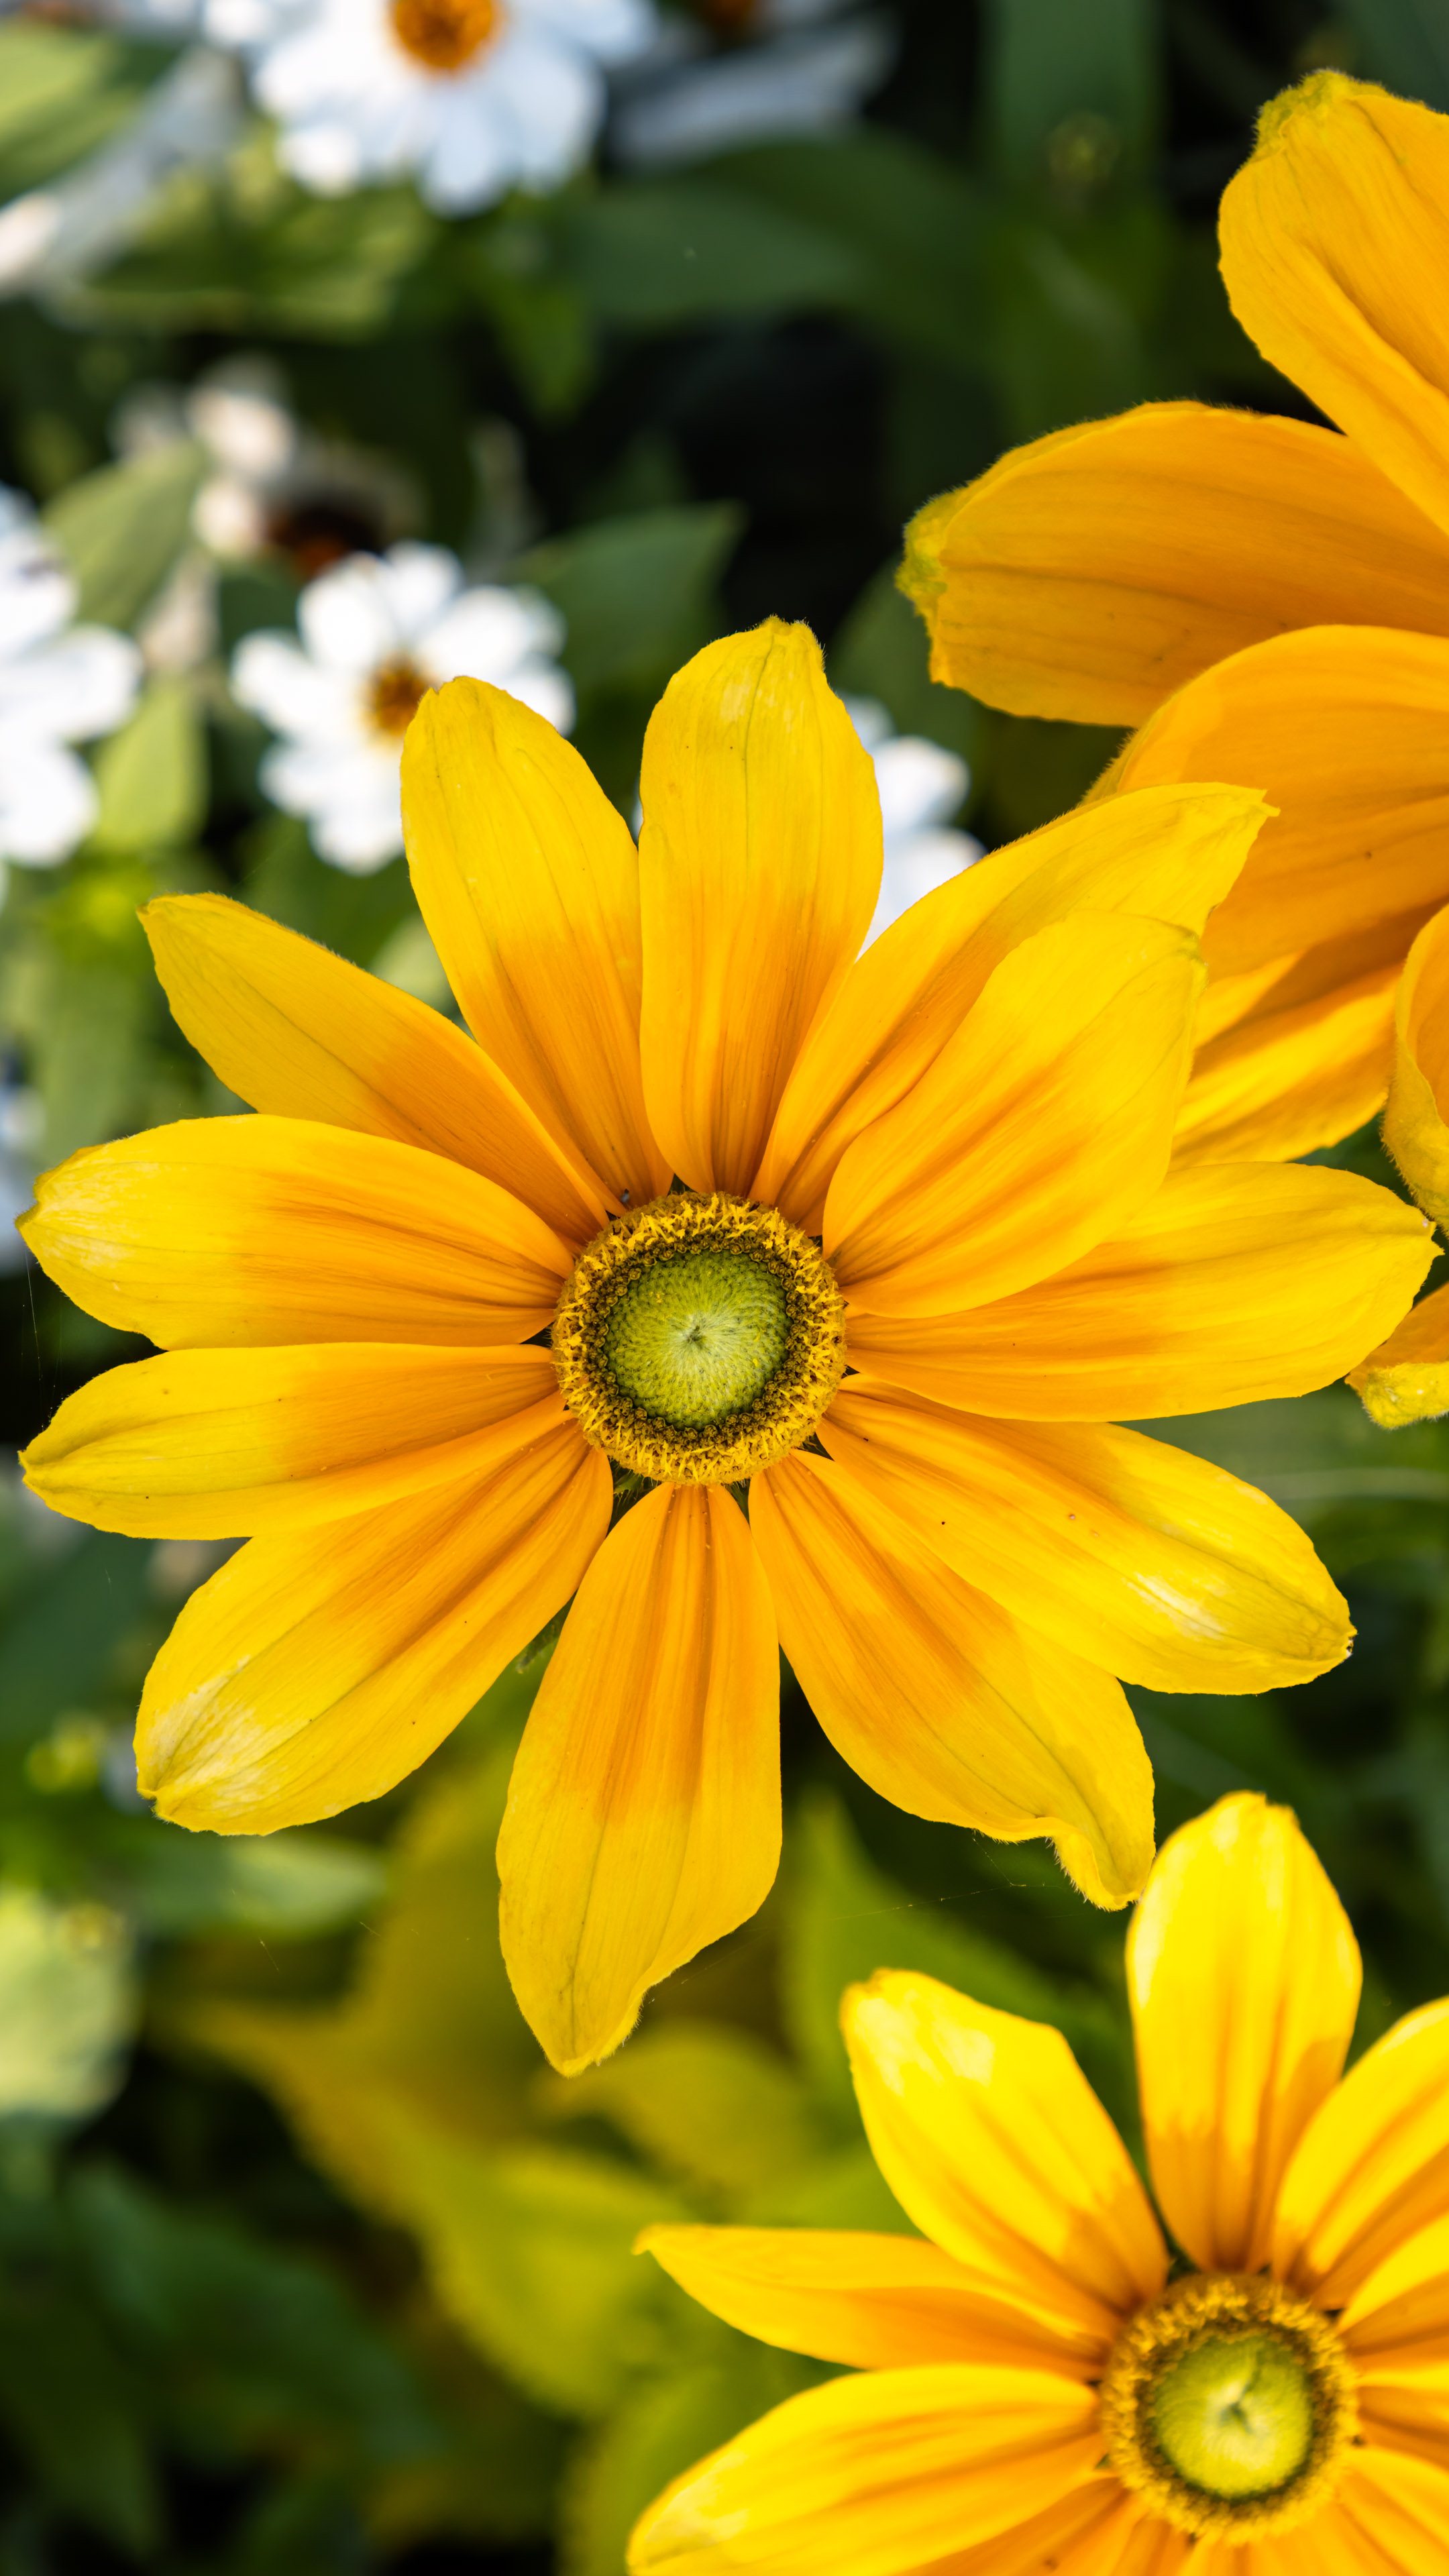 Infusez votre téléphone avec les teintes vibrantes de la nature avec notre fond d’écran de fleur jaune, un délicieux éclat de soleil pour votre expérience numérique.